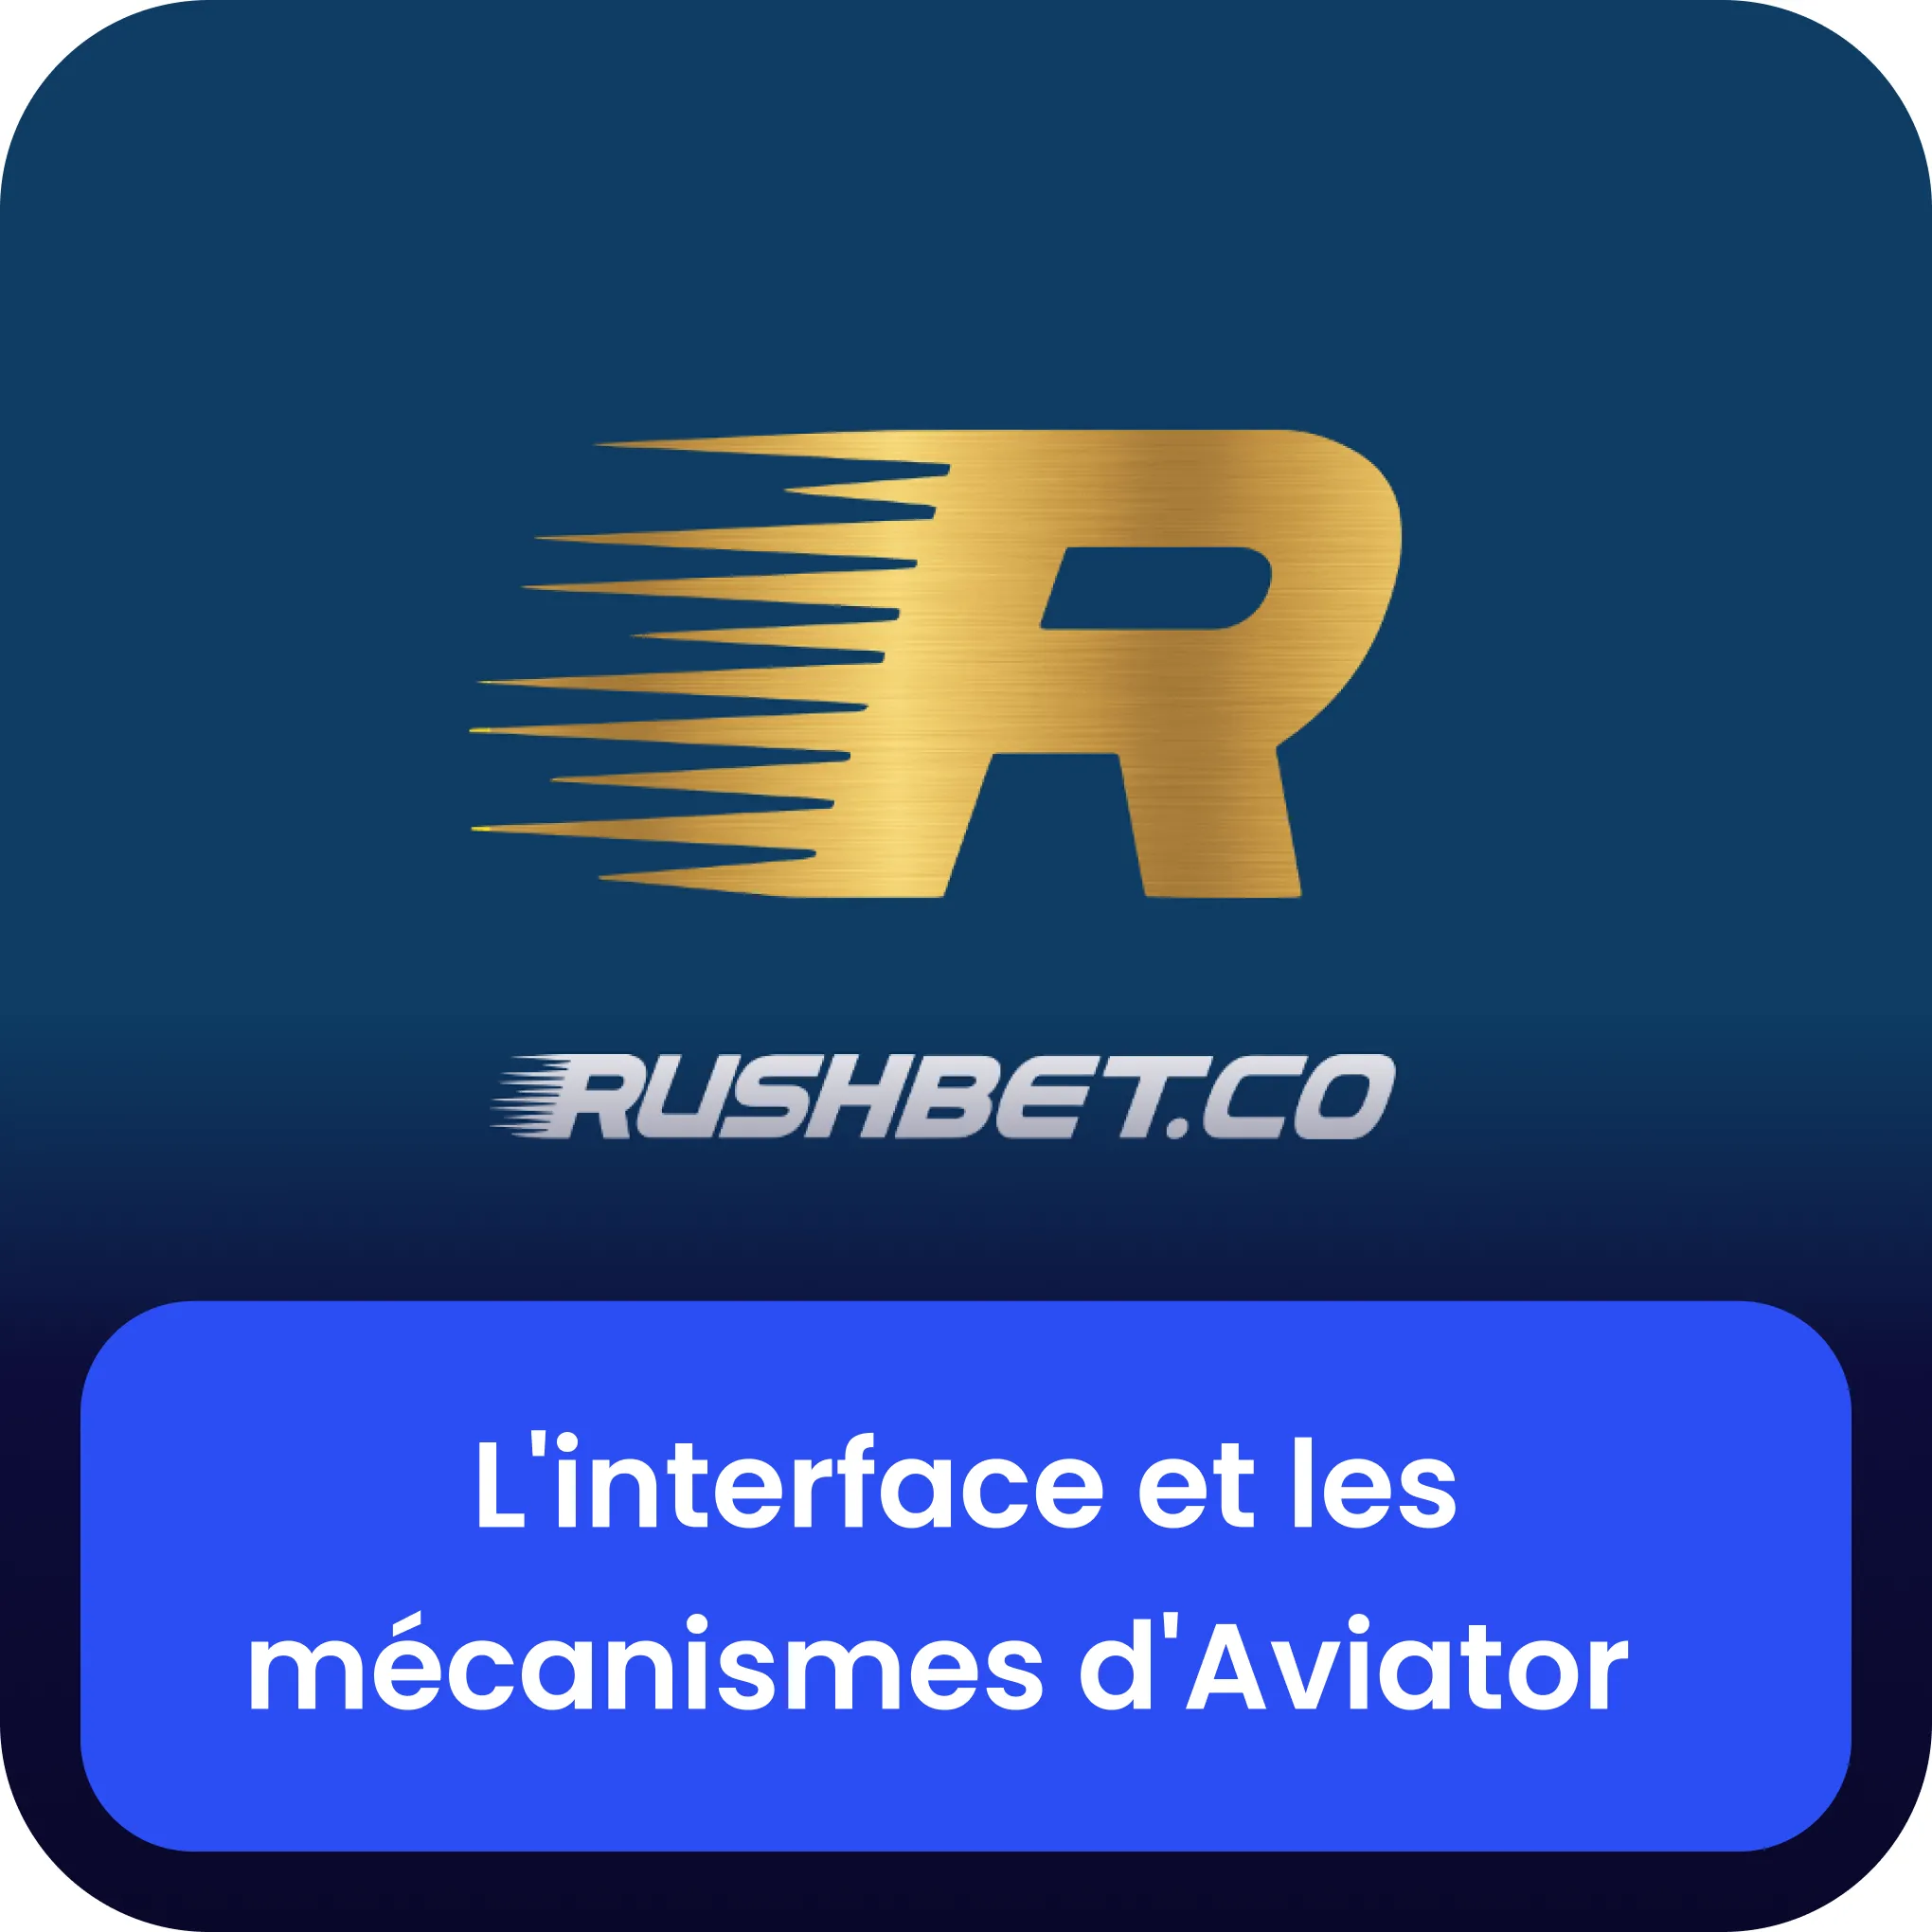 rushbet aviator interface